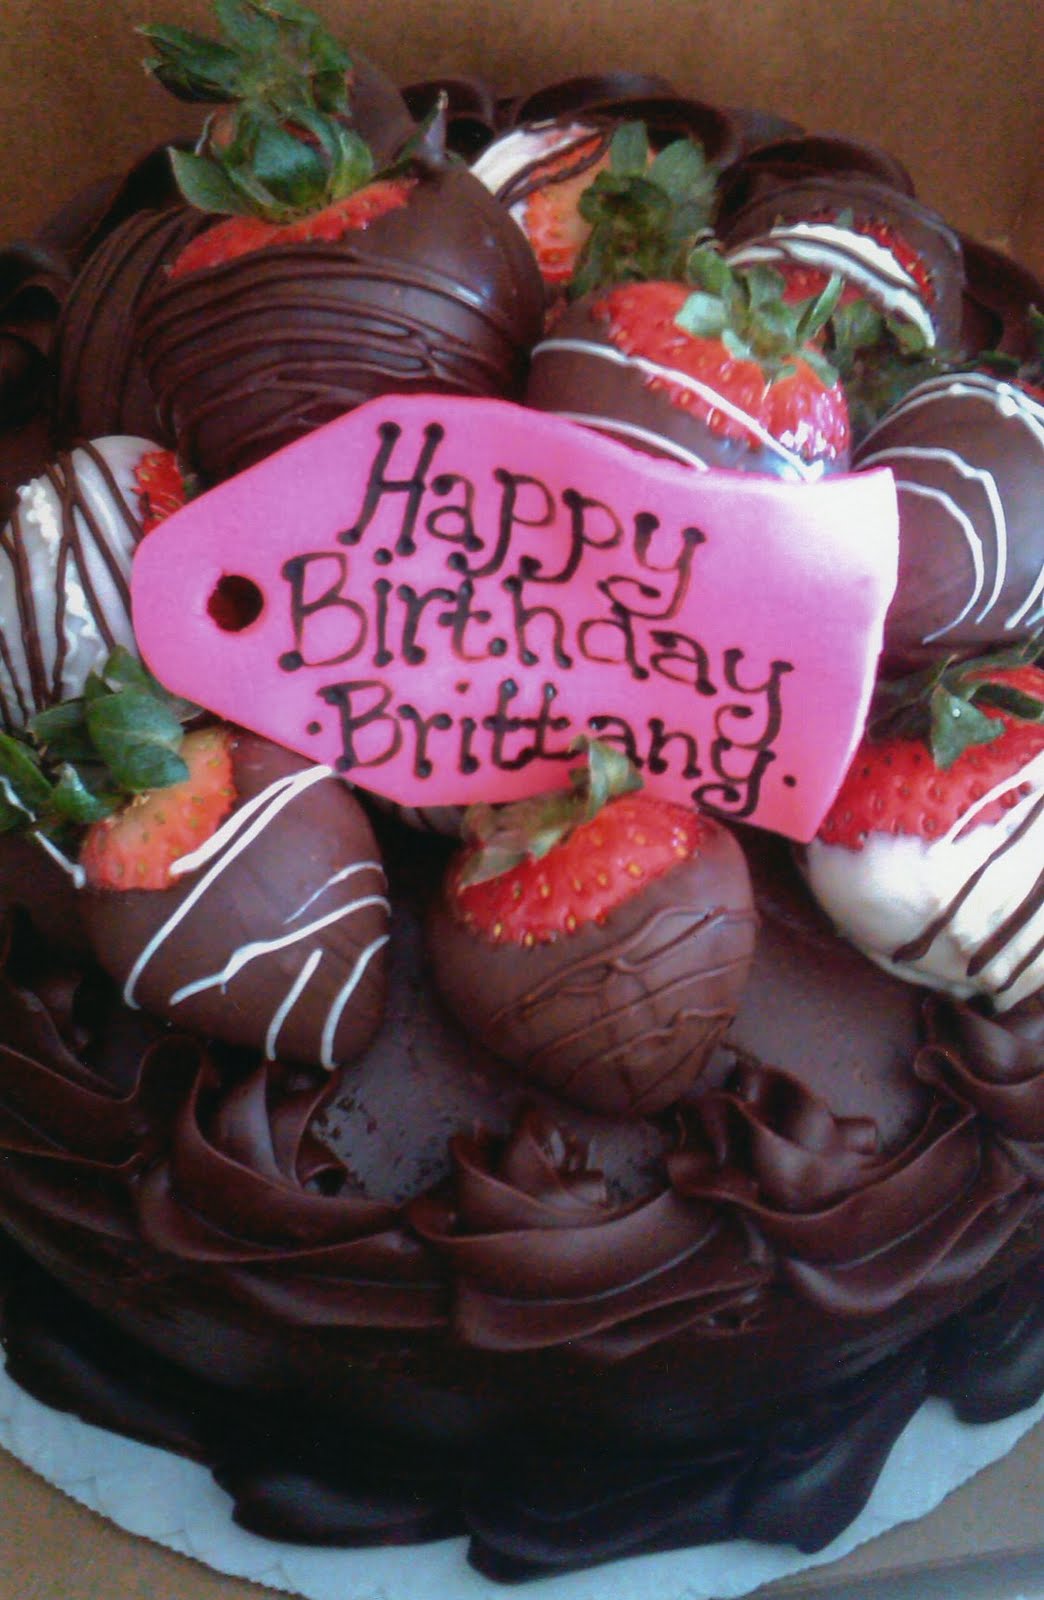 Happy Birthday Brittany Cake